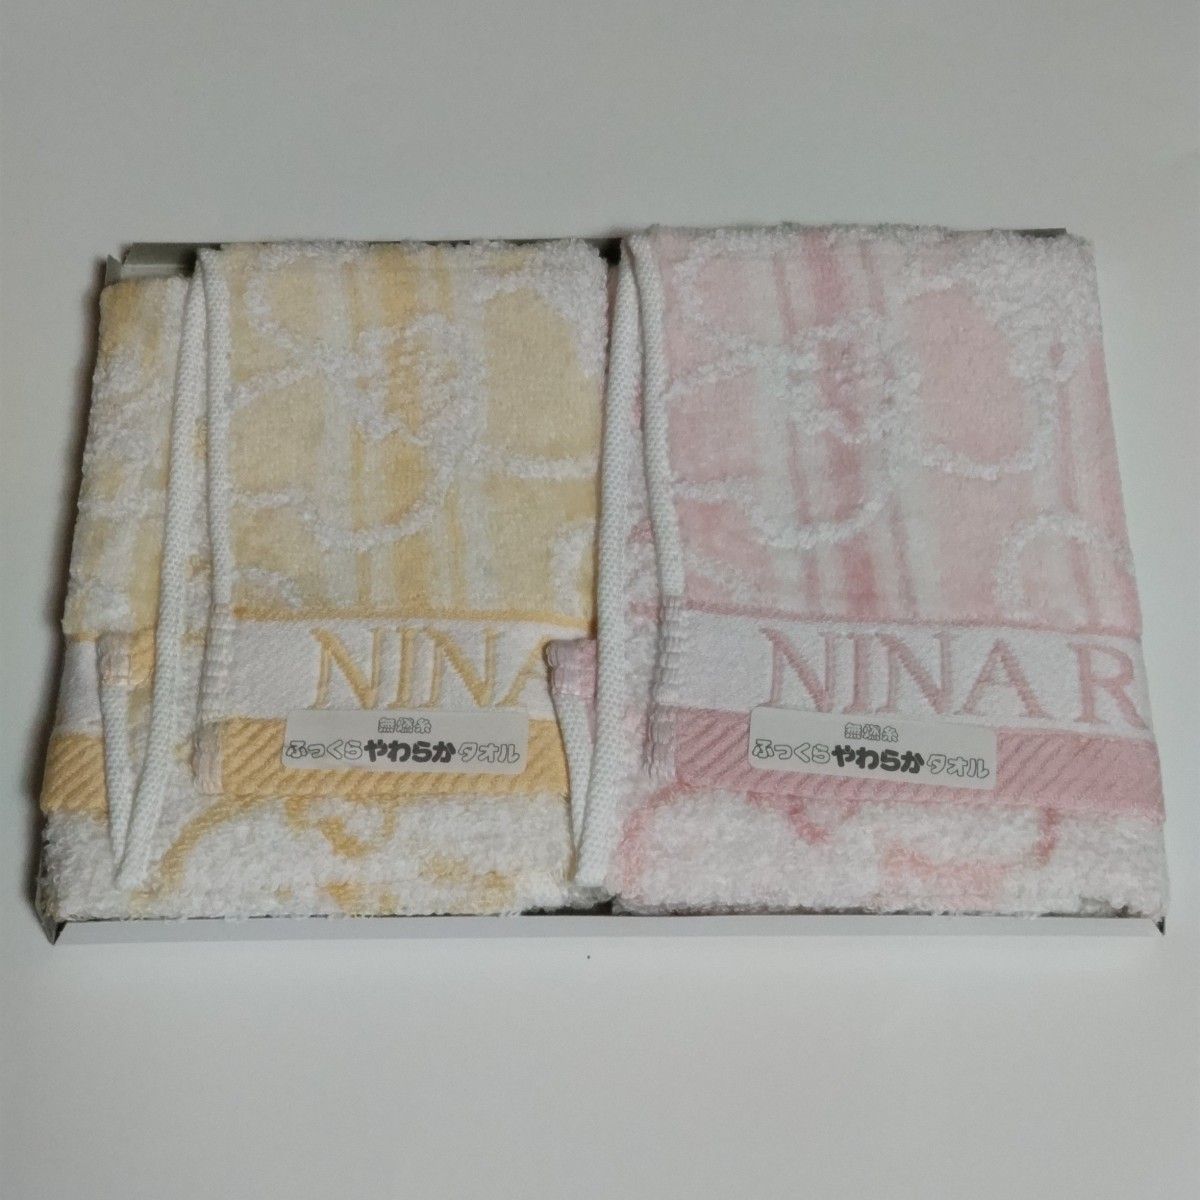 ◆【新品未使用】NINA RICCI ニナリッチ ふっくら やわらか タオル 2枚セット ピンク イエロー